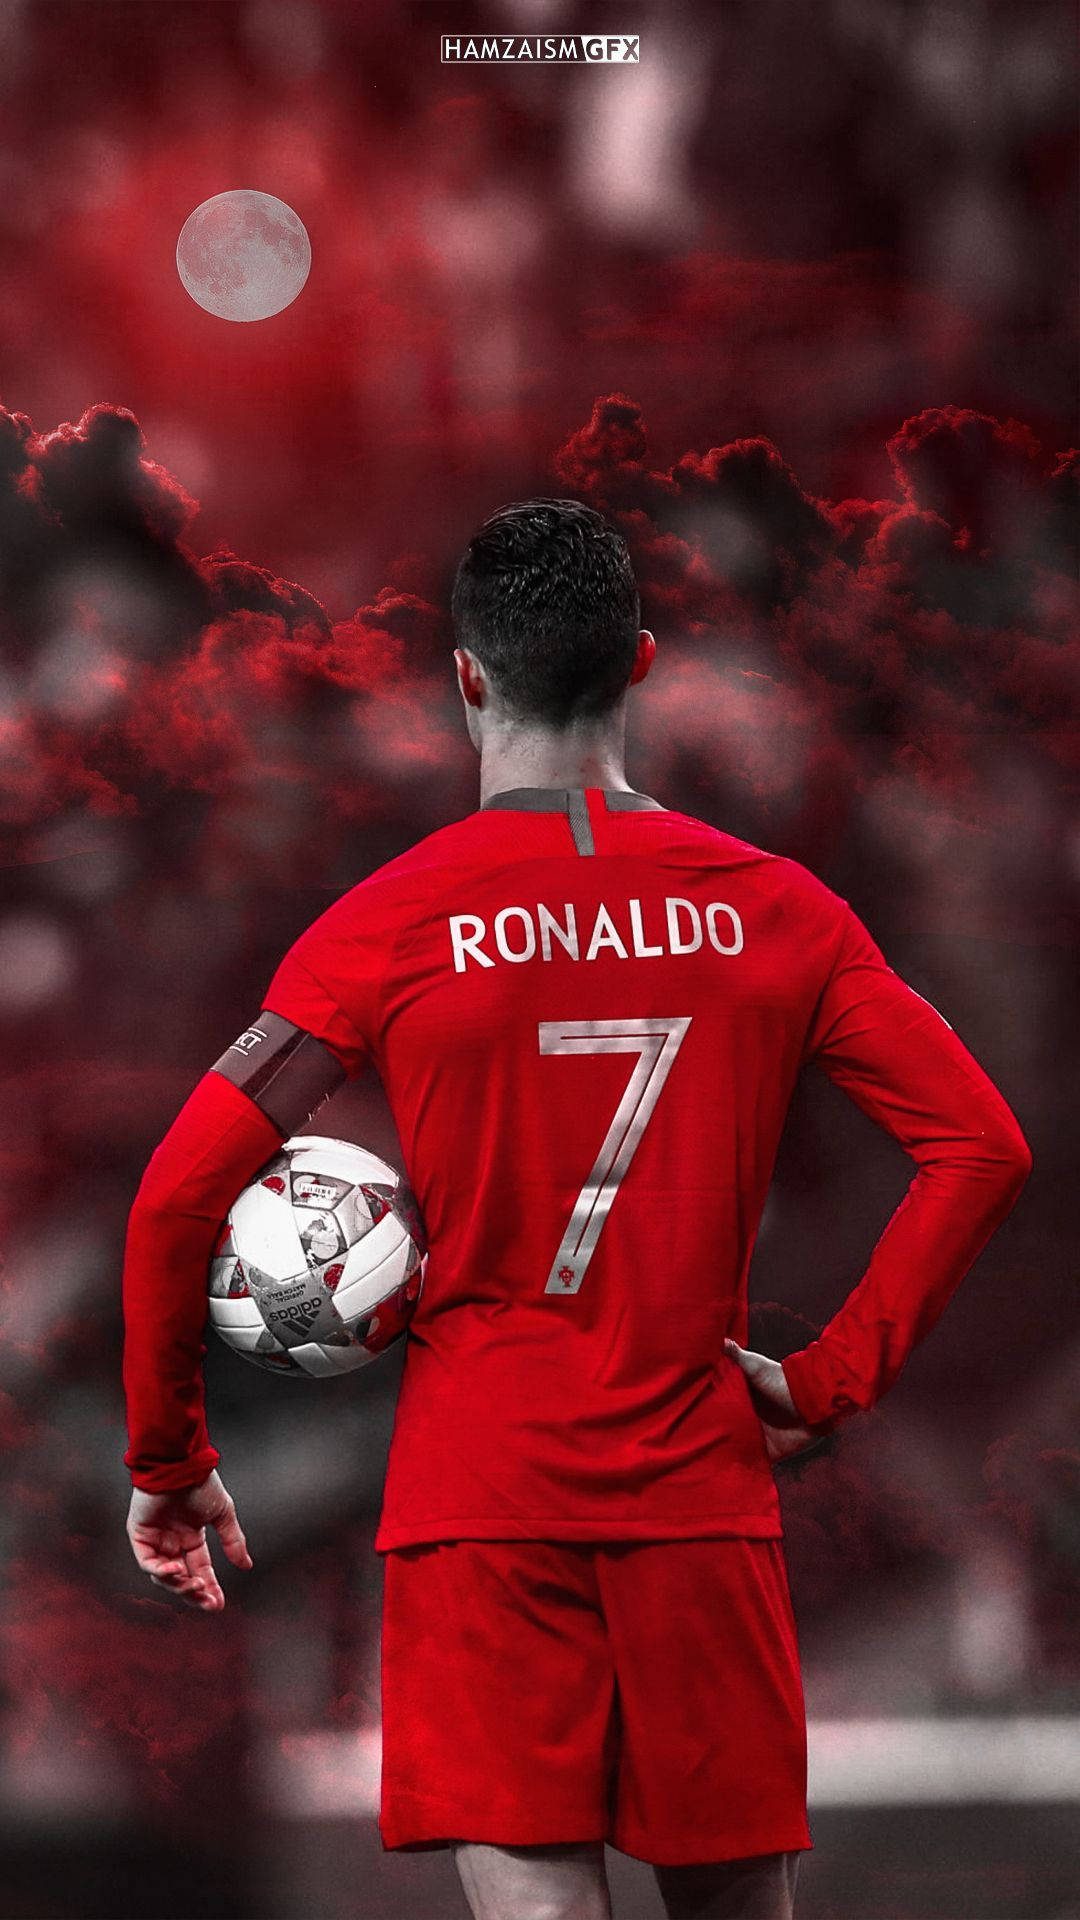  Cristiano Ronaldo Hintergrundbild 1080x1920. Download Portuguese Cristiano Ronaldo Cool Red Aesthetic Wallpaper